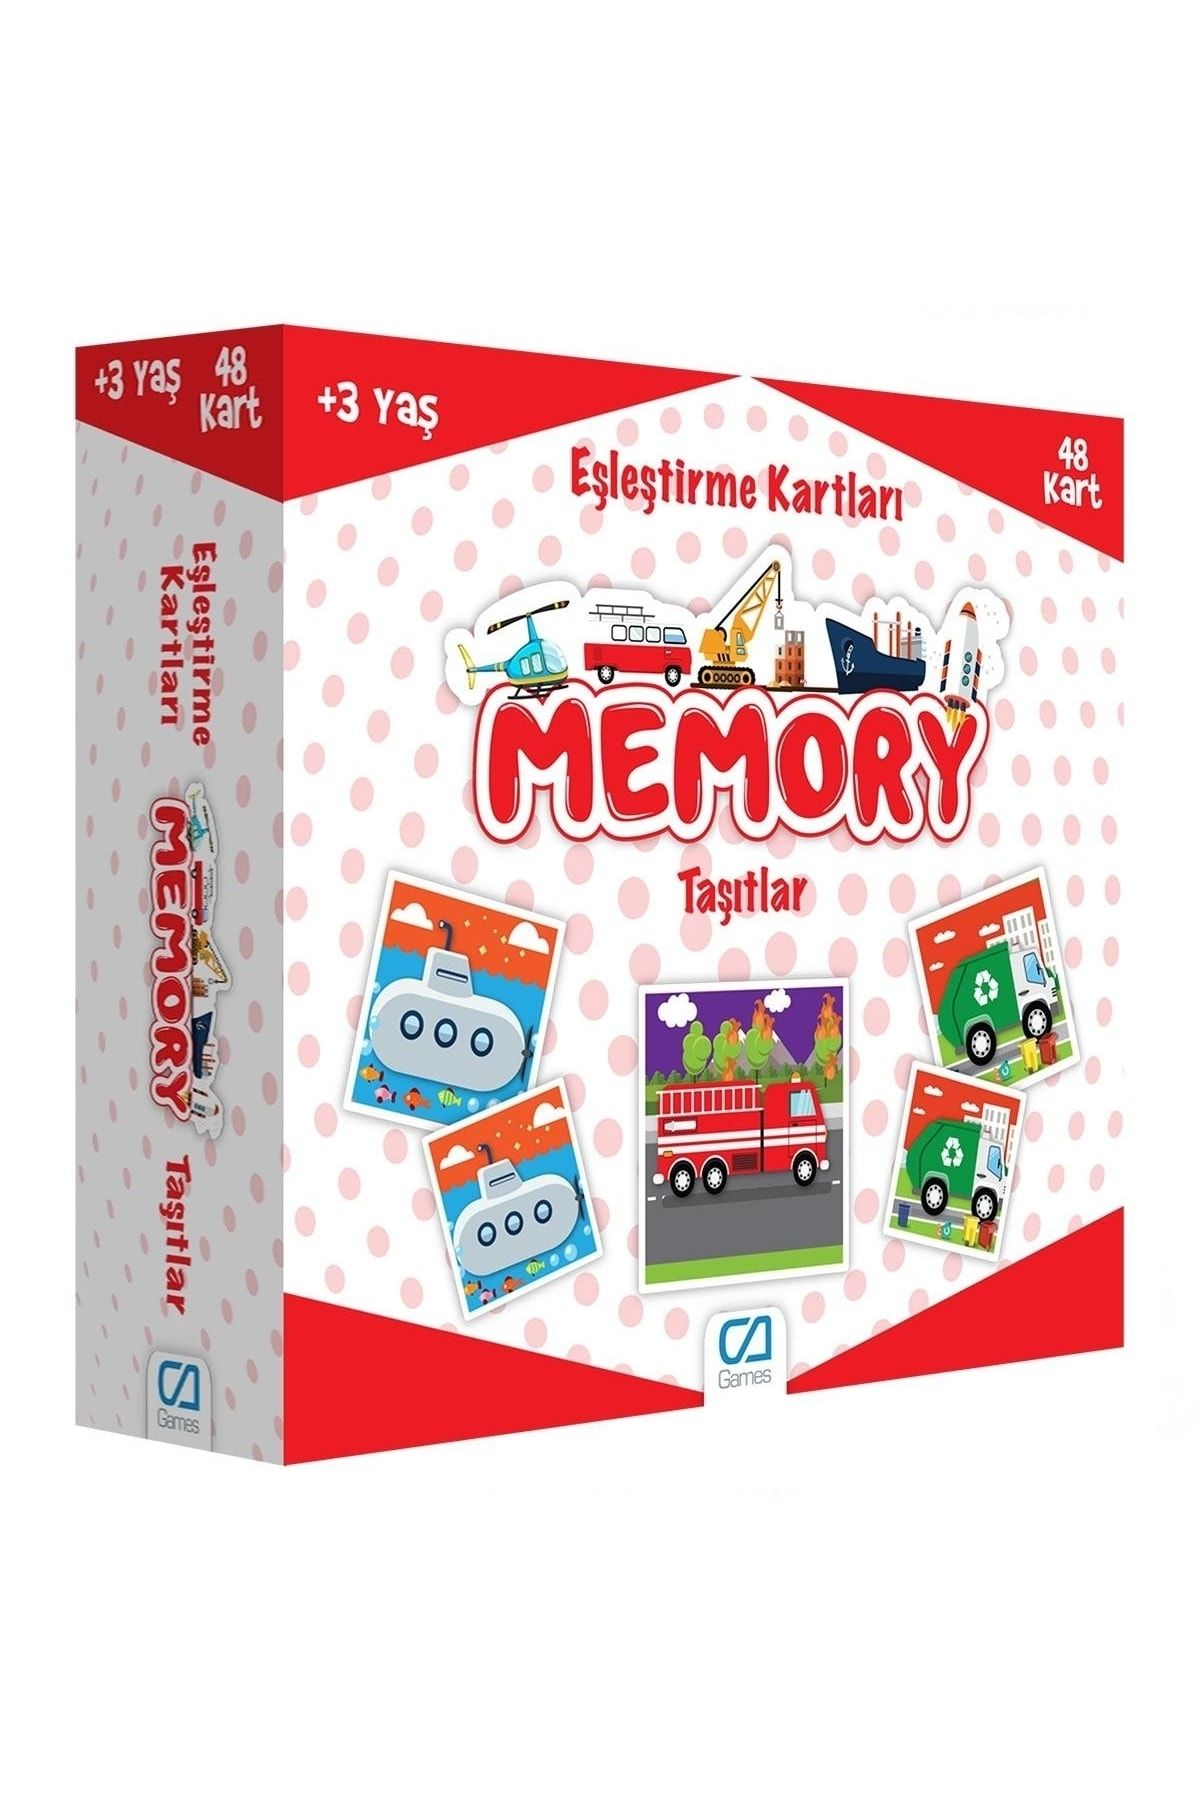 CA Games Memory Eşleştirme Kartları Taşıtlar